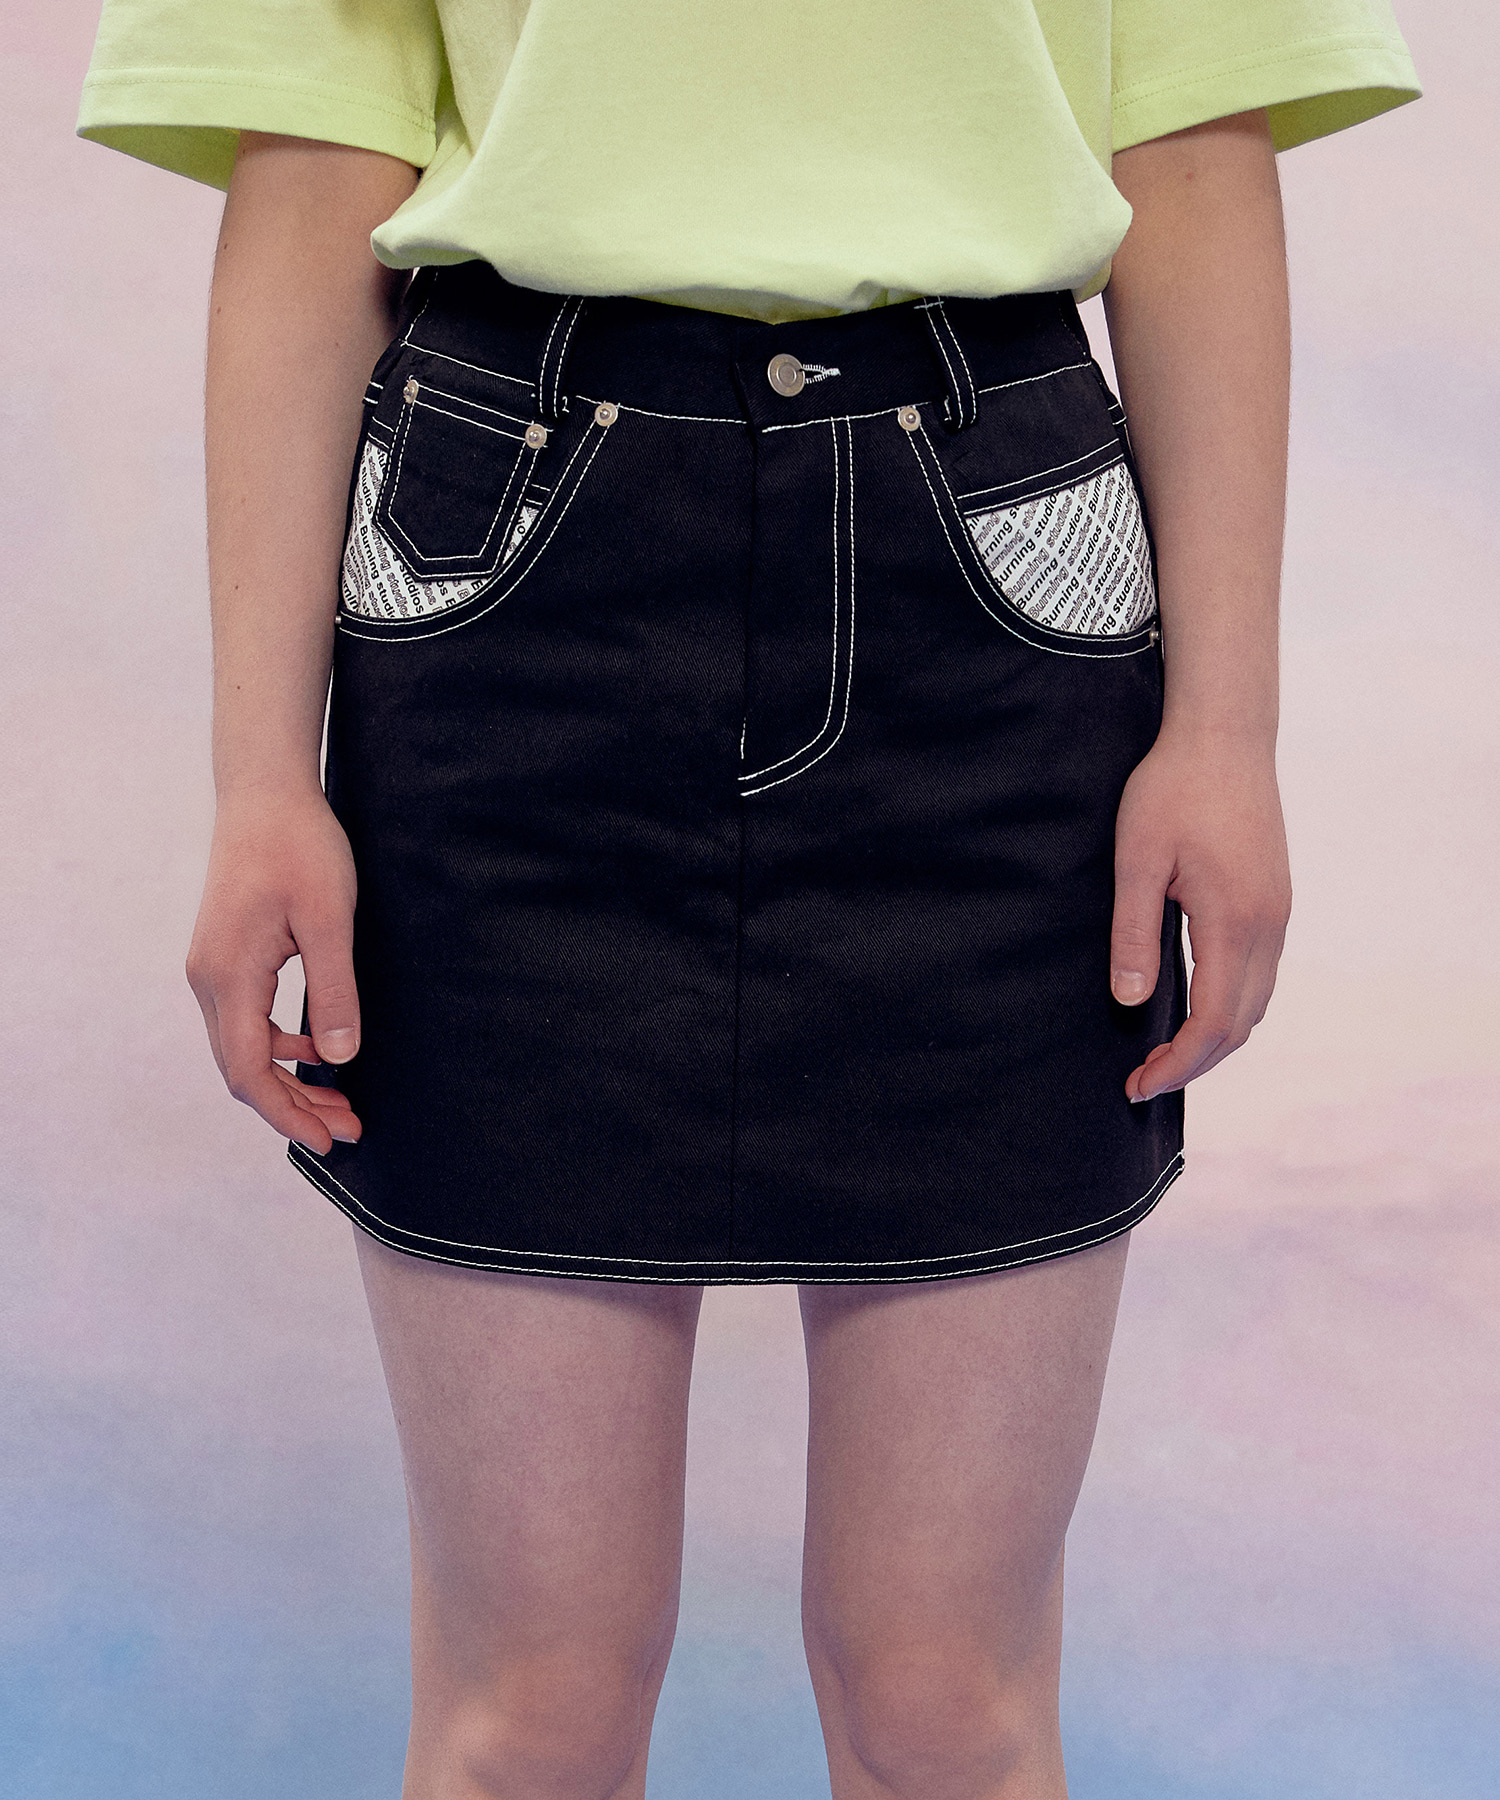 Short Cotton Skirt (Black)